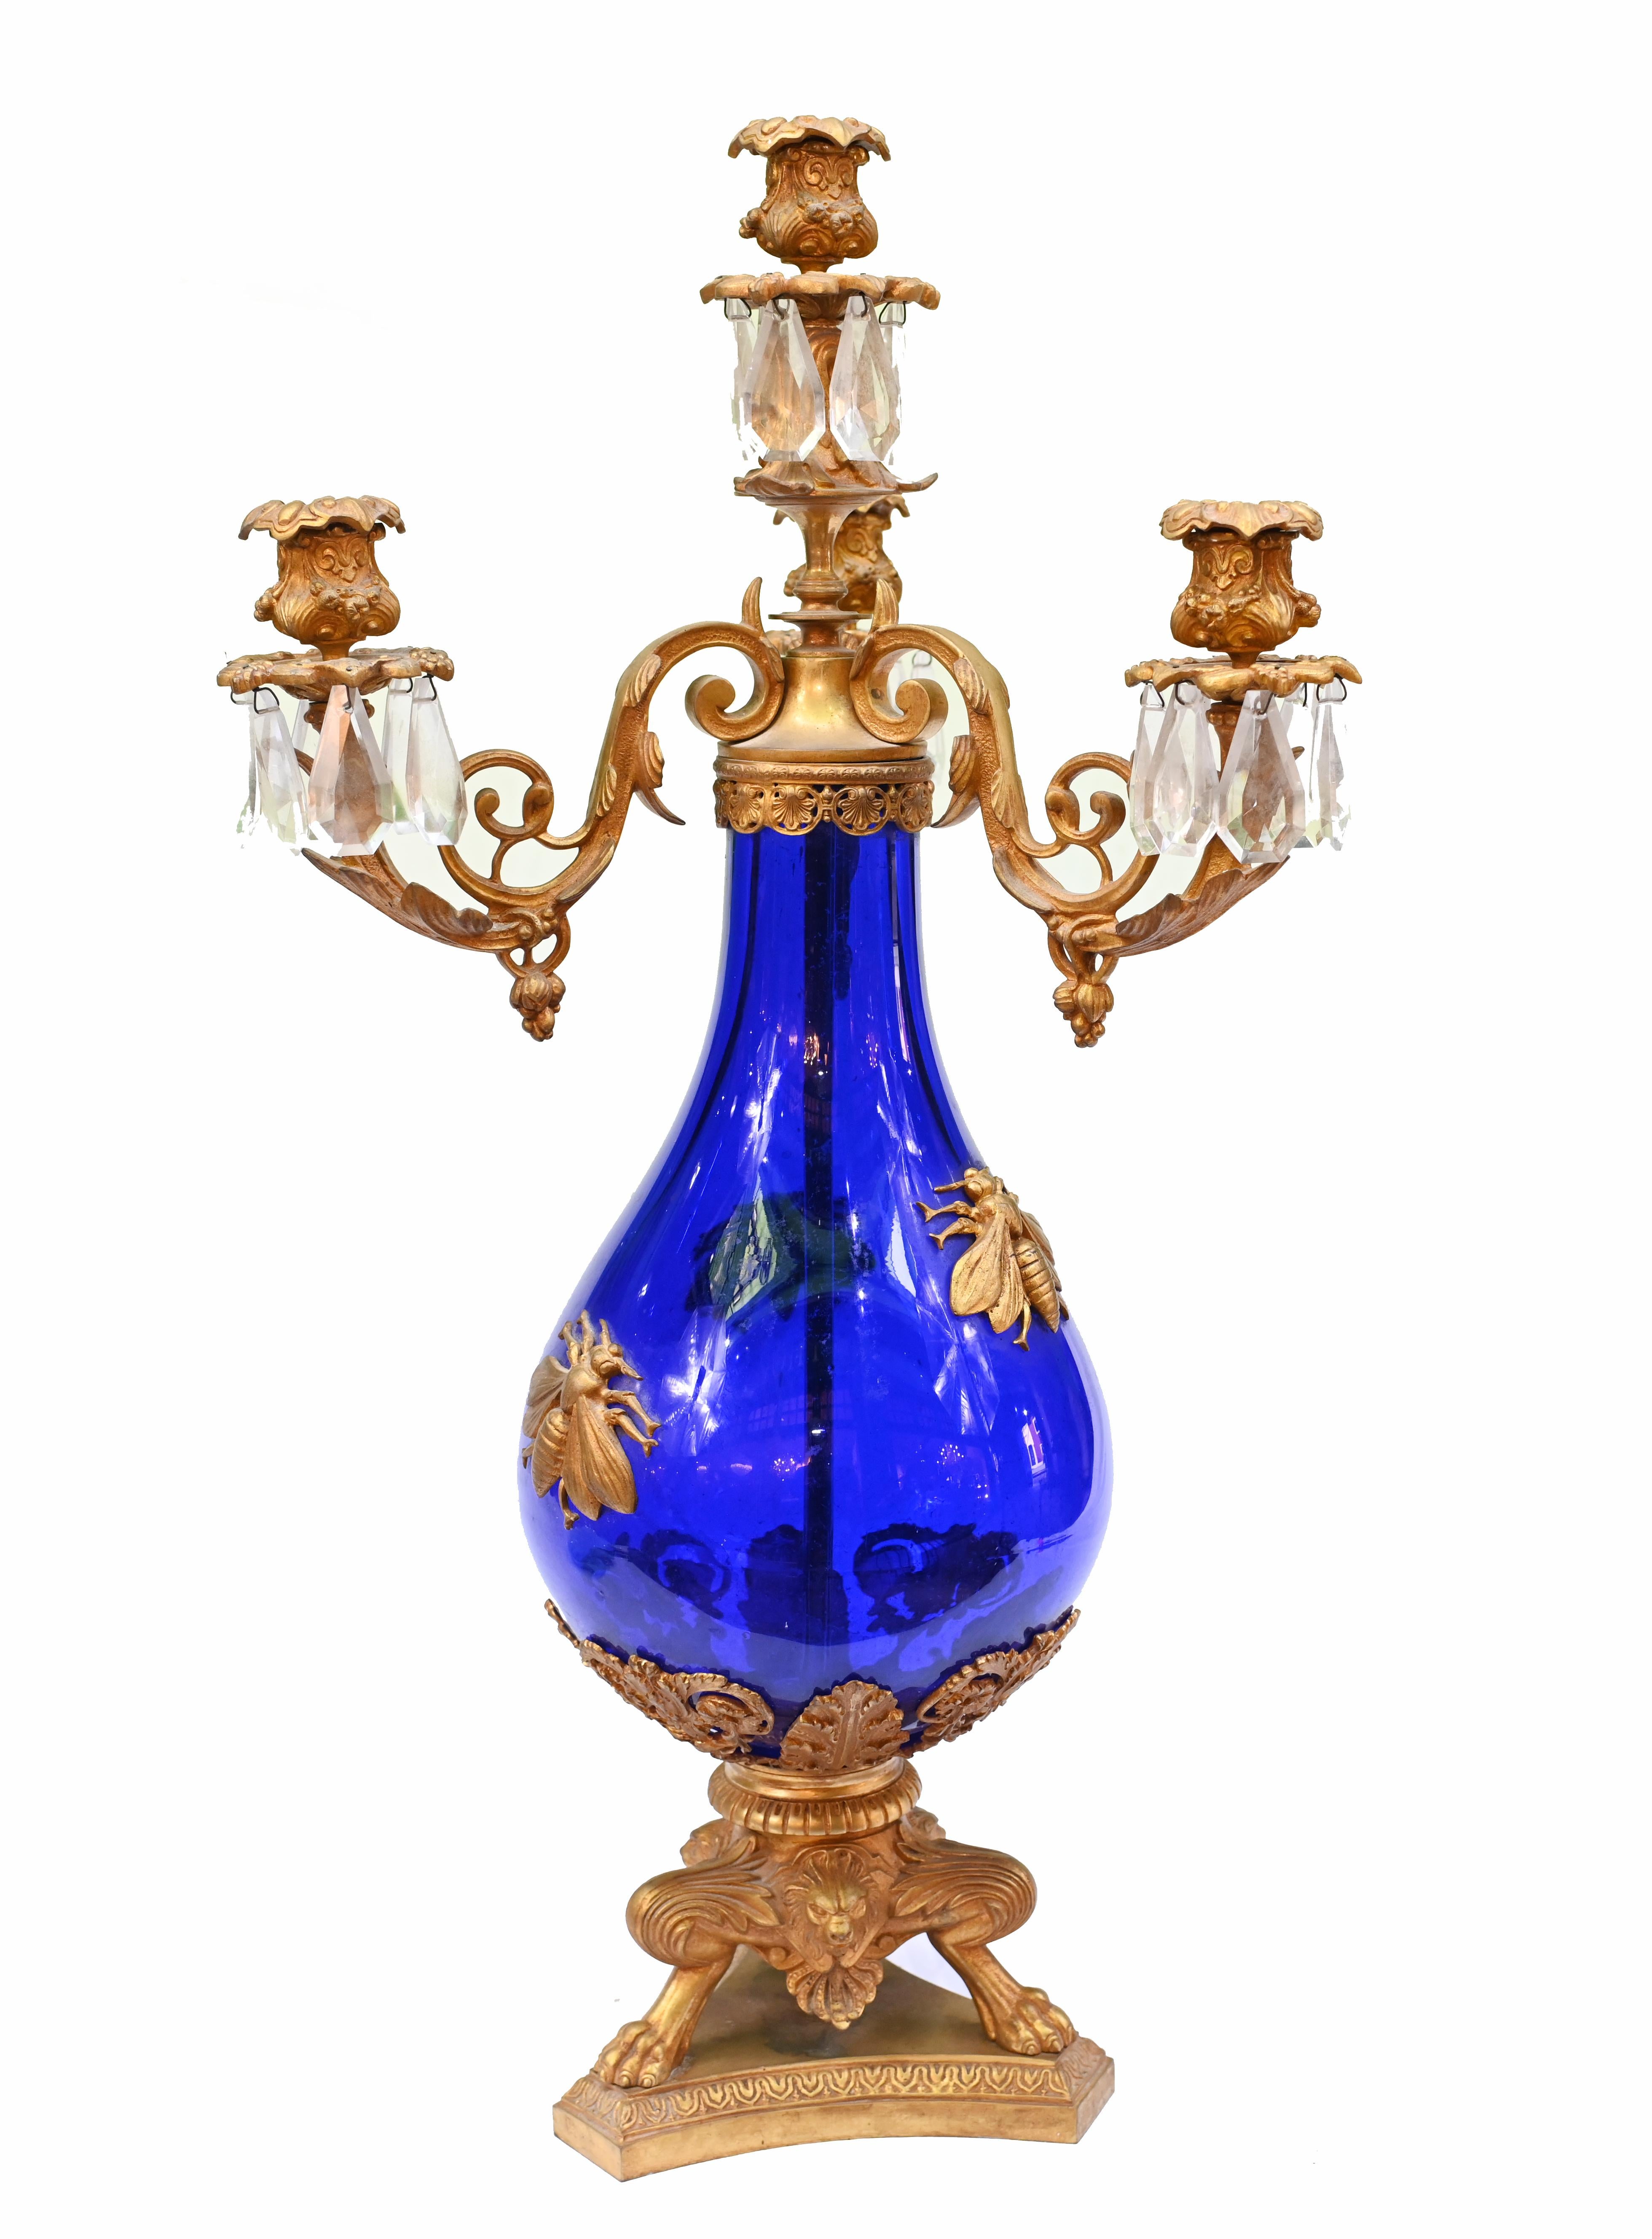 Superbe paire de candélabres français anciens avec des branches dorées montées sur des vases en verre bleu.
Quatre branches pour chaque urne
J'adore l'insecte ailé excentrique - le frelon ? - sur la vitre
La base est également caractérisée par des